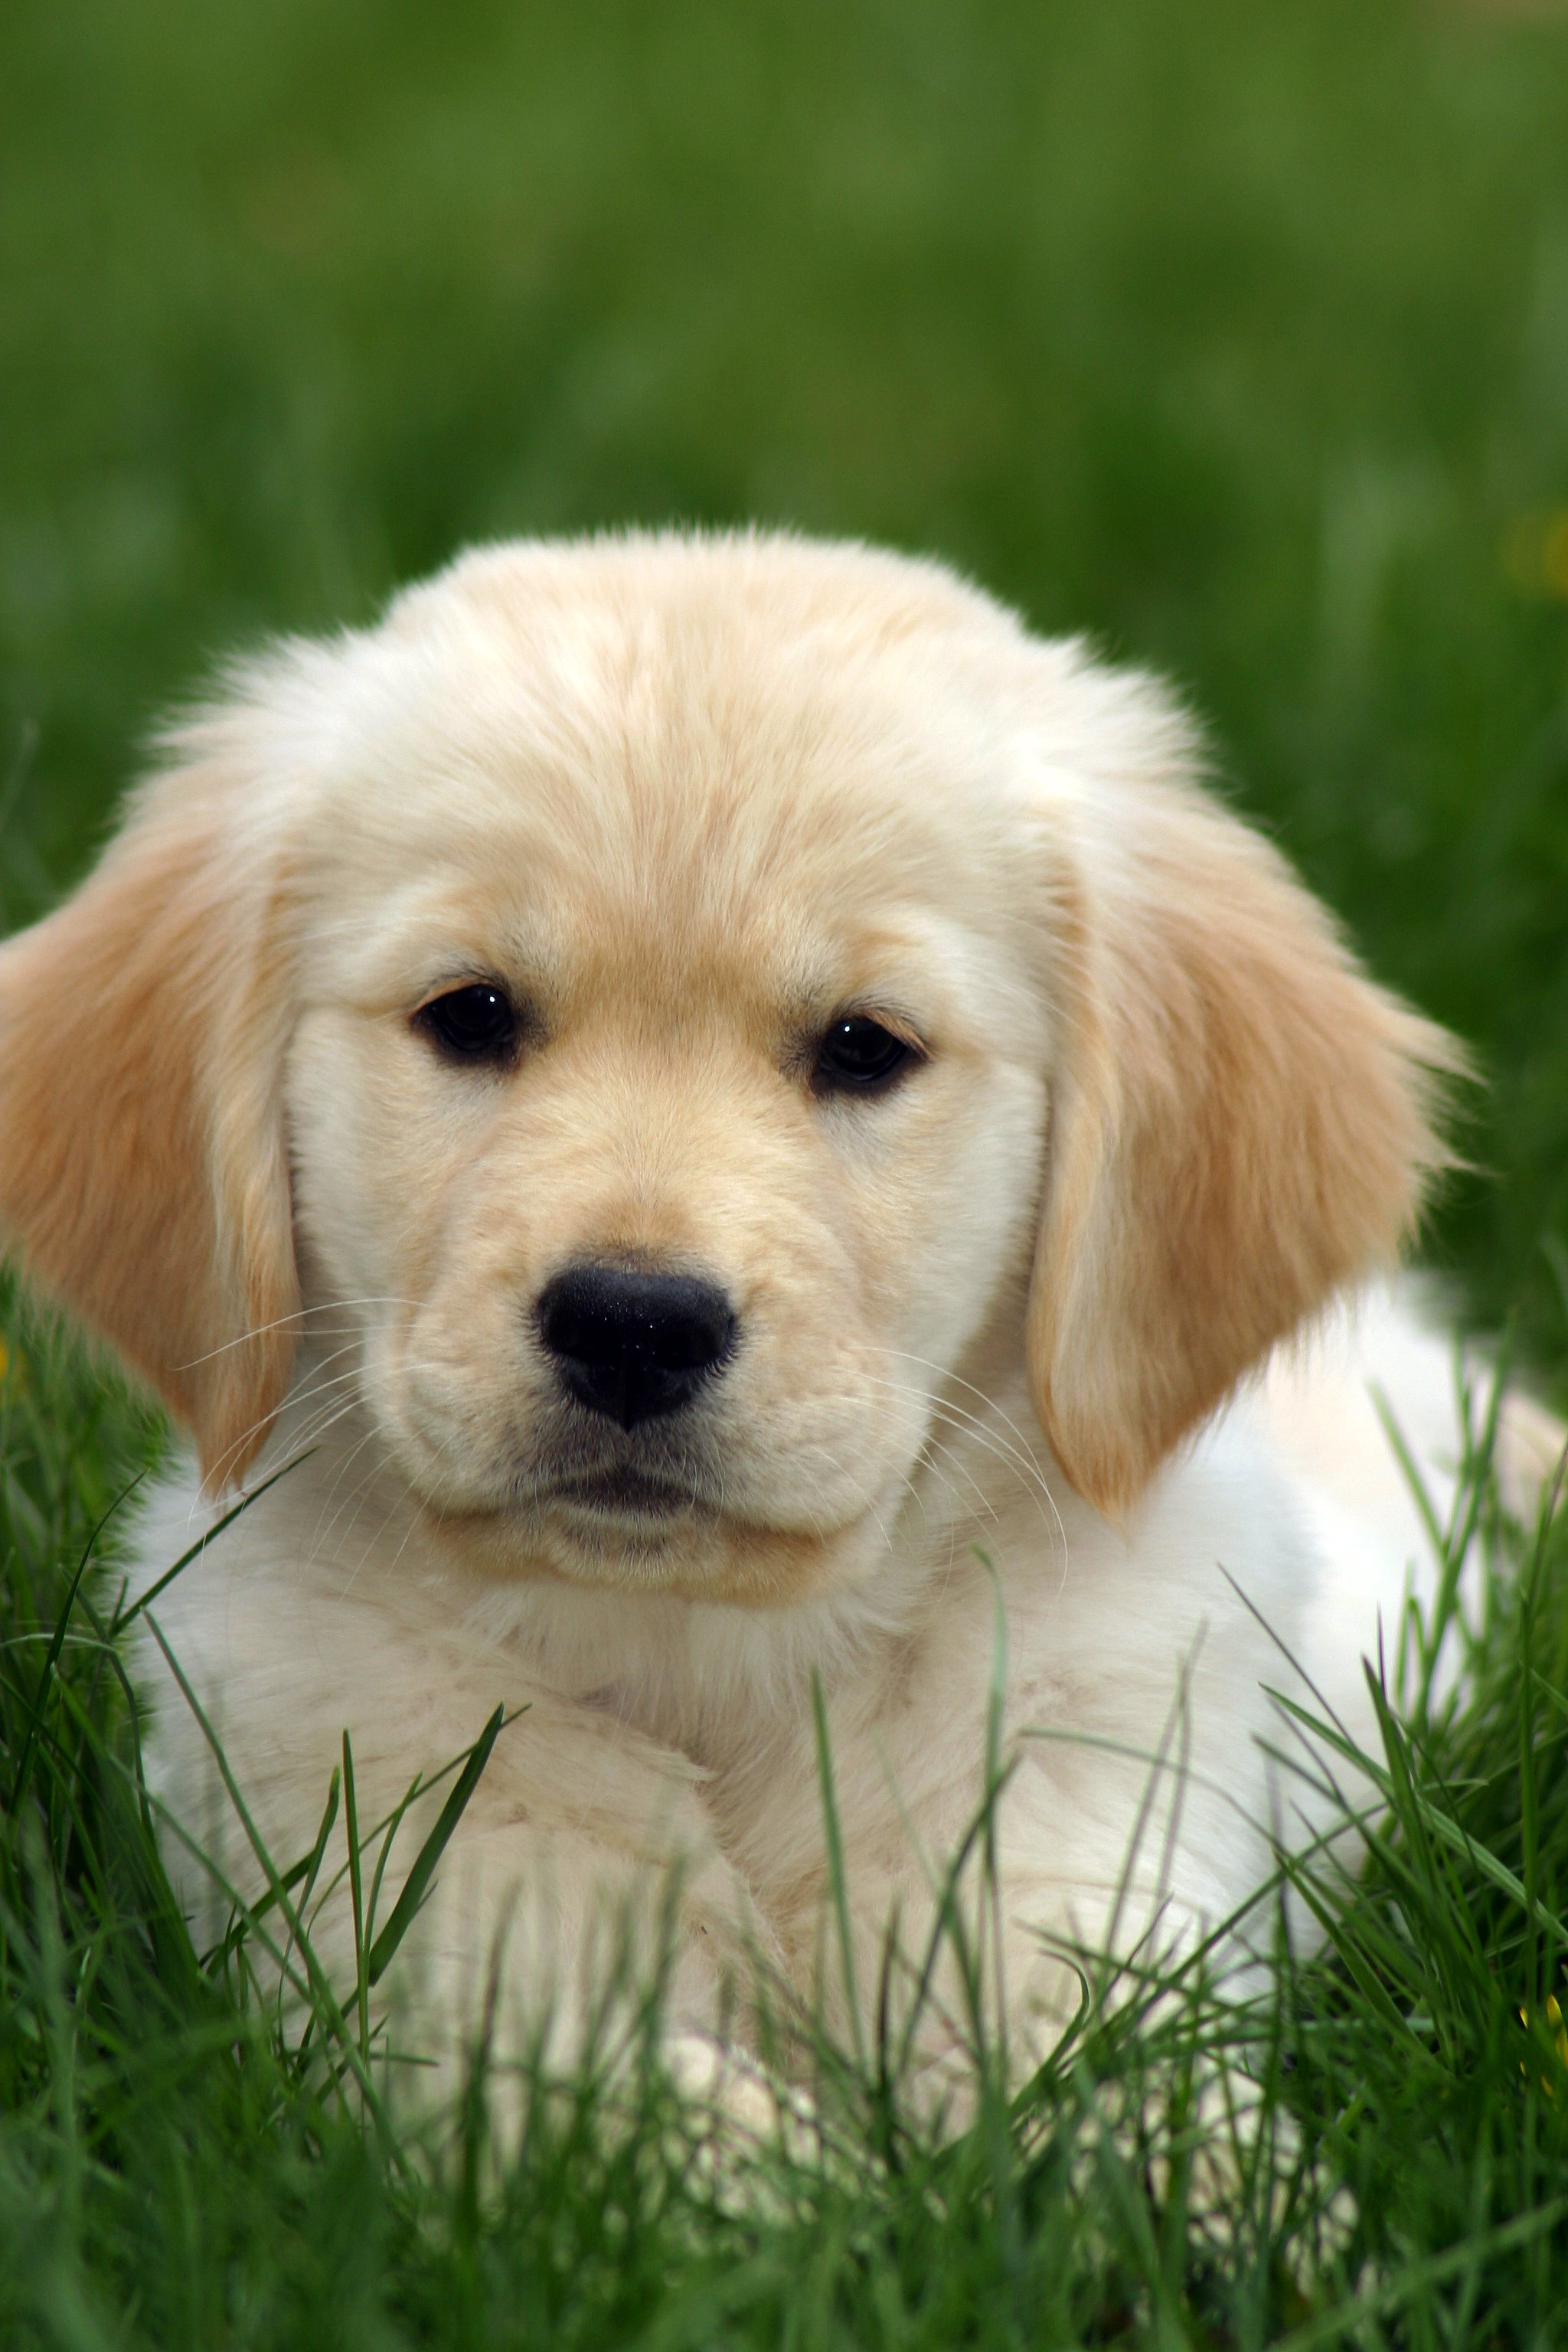 Golden Retriever Puppy in Grass Flickr Photo Sharing!